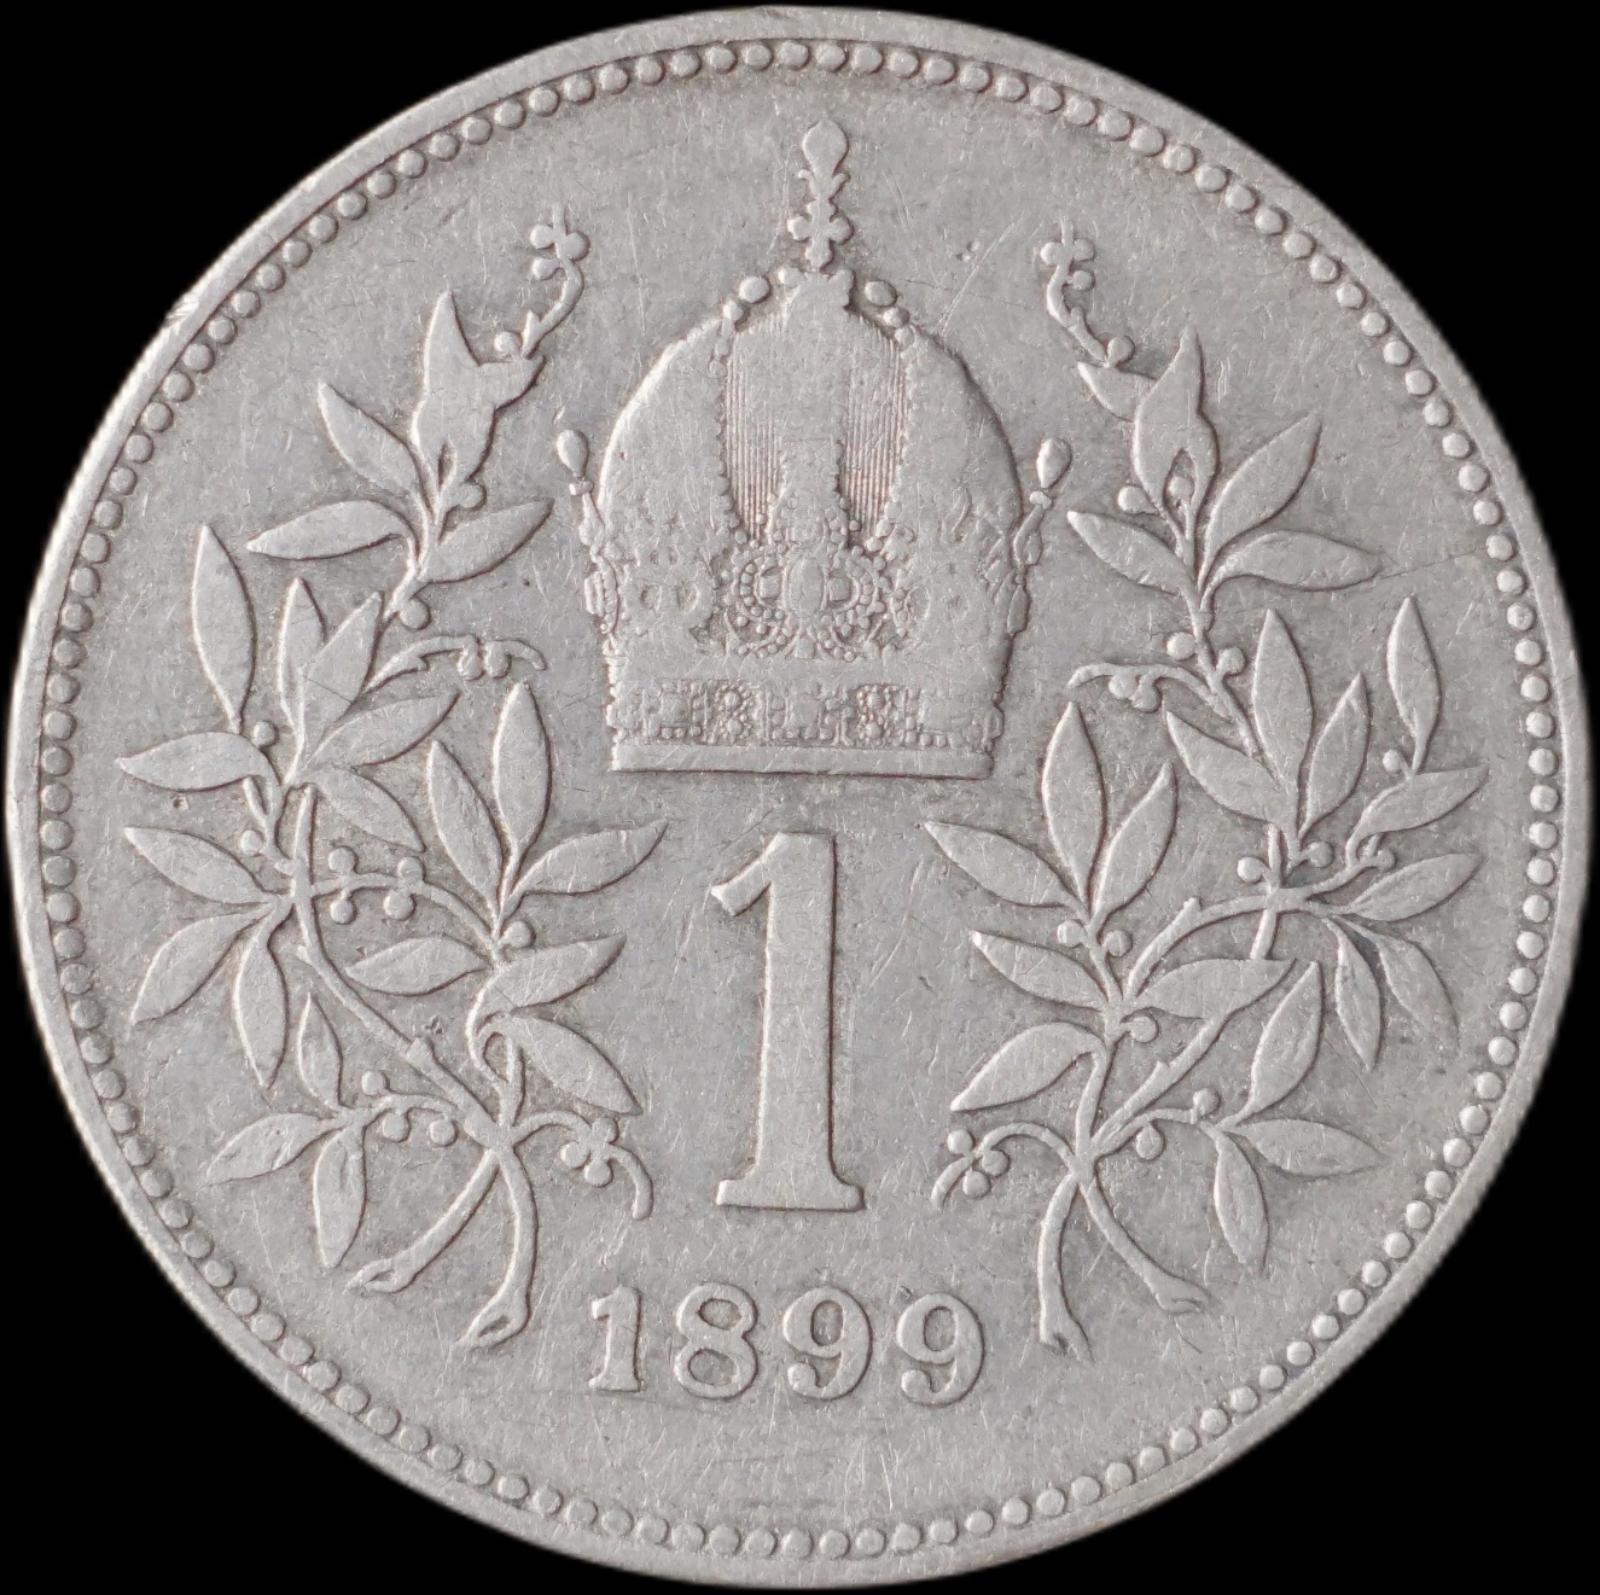 Rakúsko-Uhorsko - 1 koruna 1899 - strieborná minca - Numizmatika